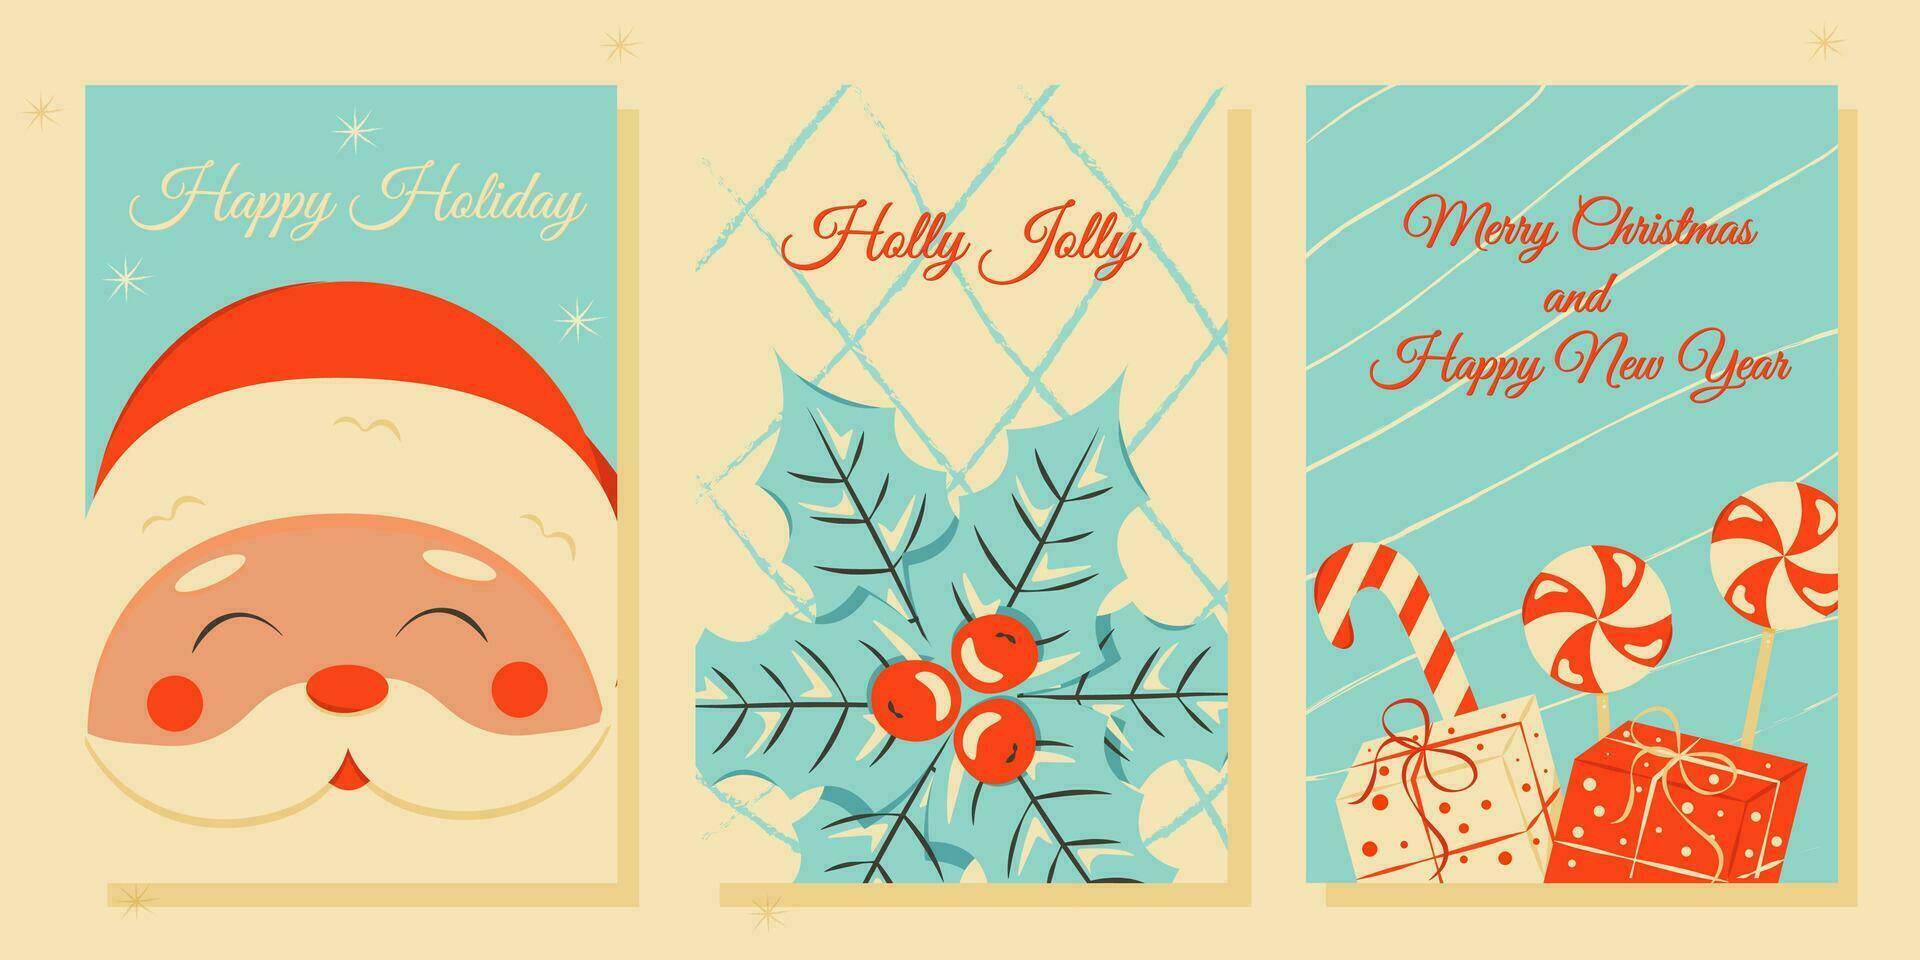 einstellen von Weihnachten und Neu Jahr Plakate und Gruß Karten im retro Stil. vektor